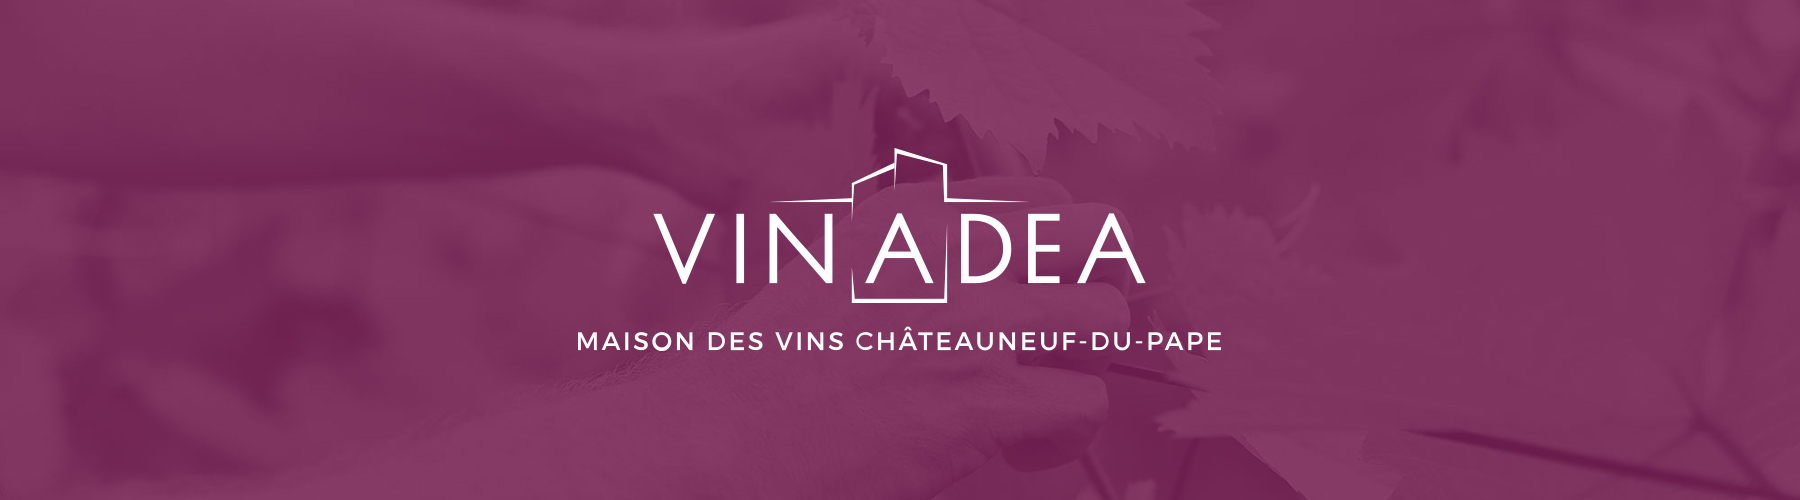 Vinadea : La maison des vins Châteauneuf-du-Pape